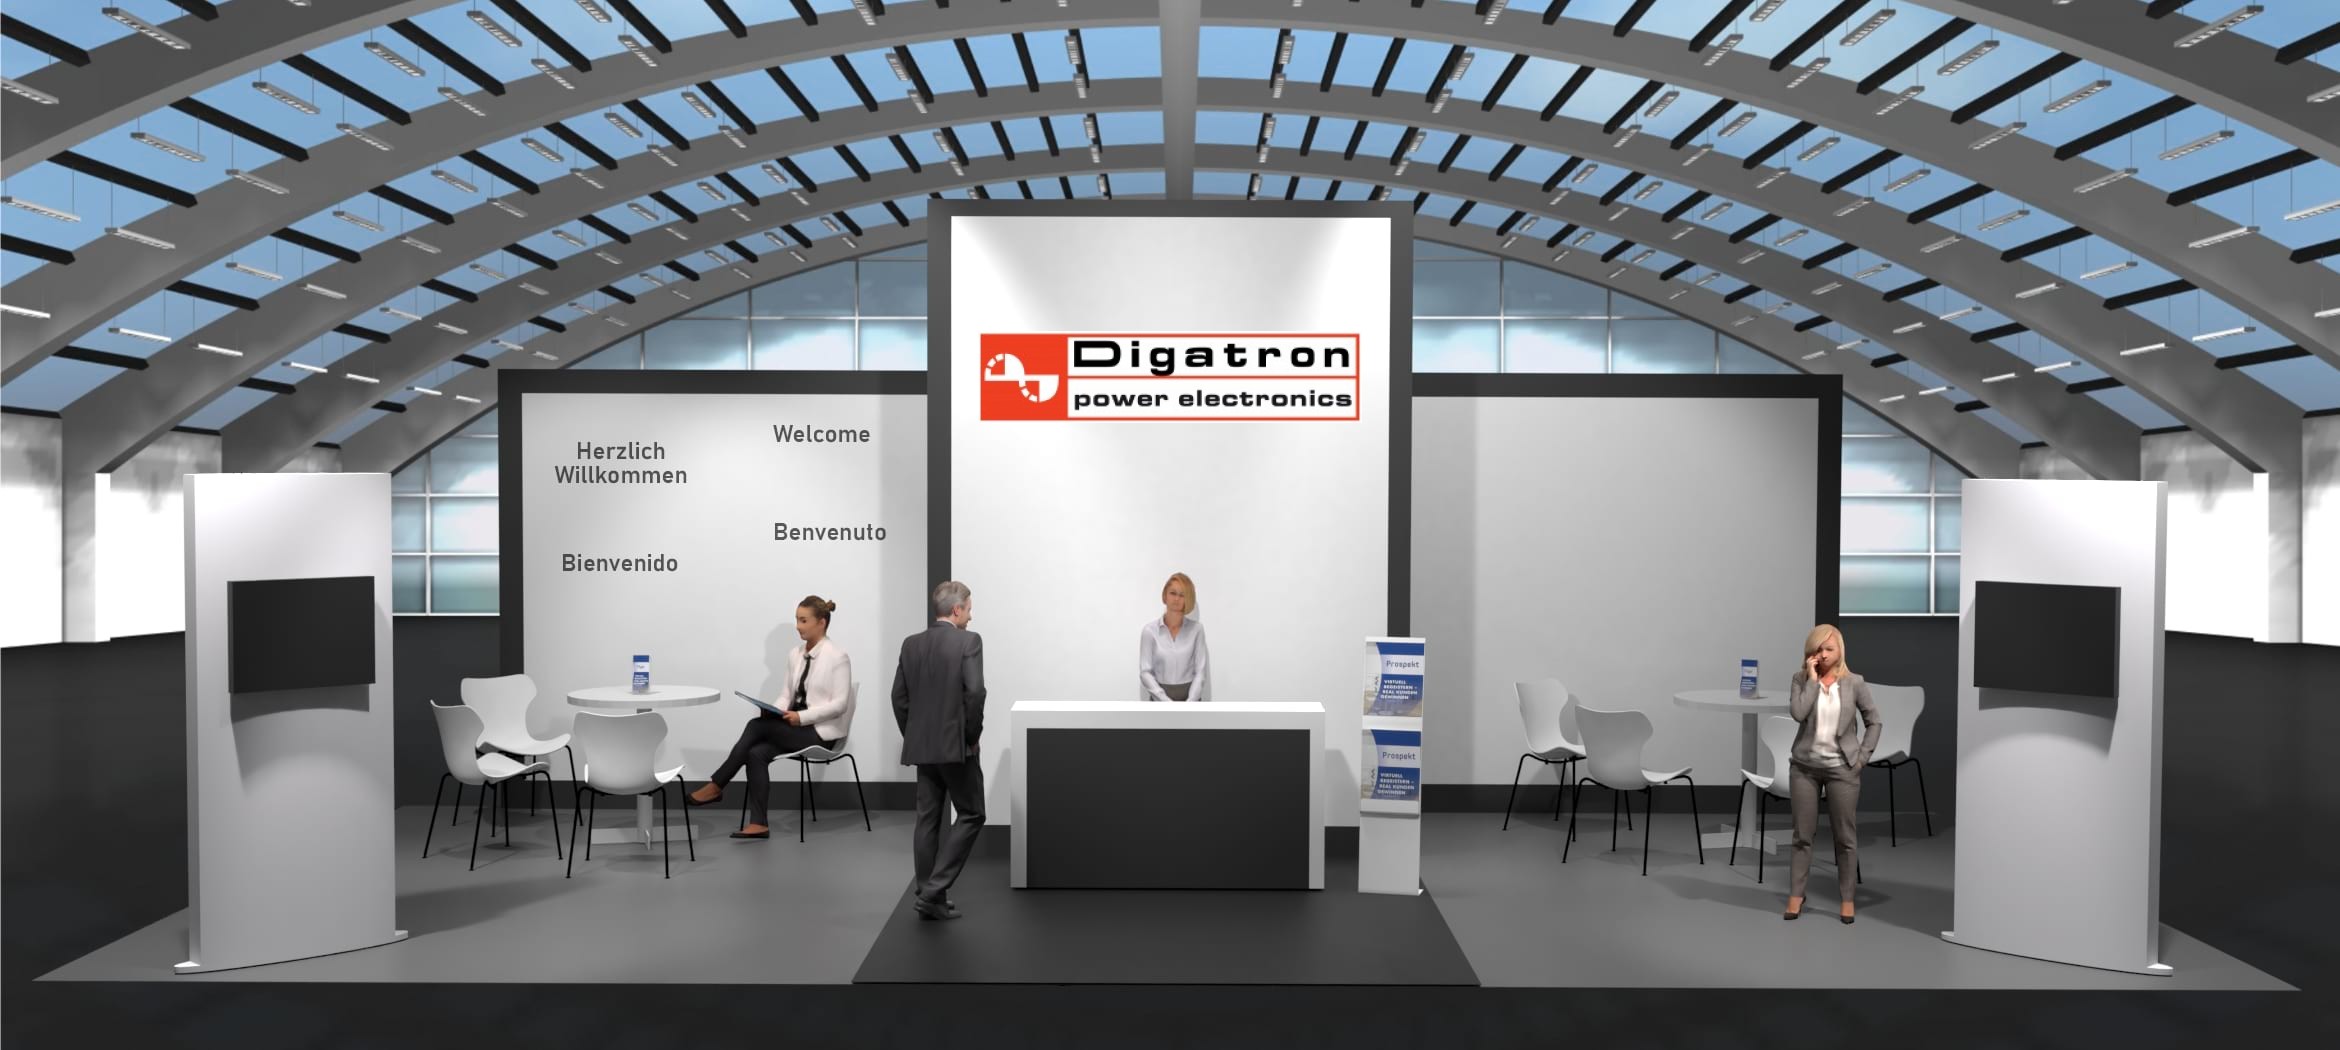 Digatron Power Electronics